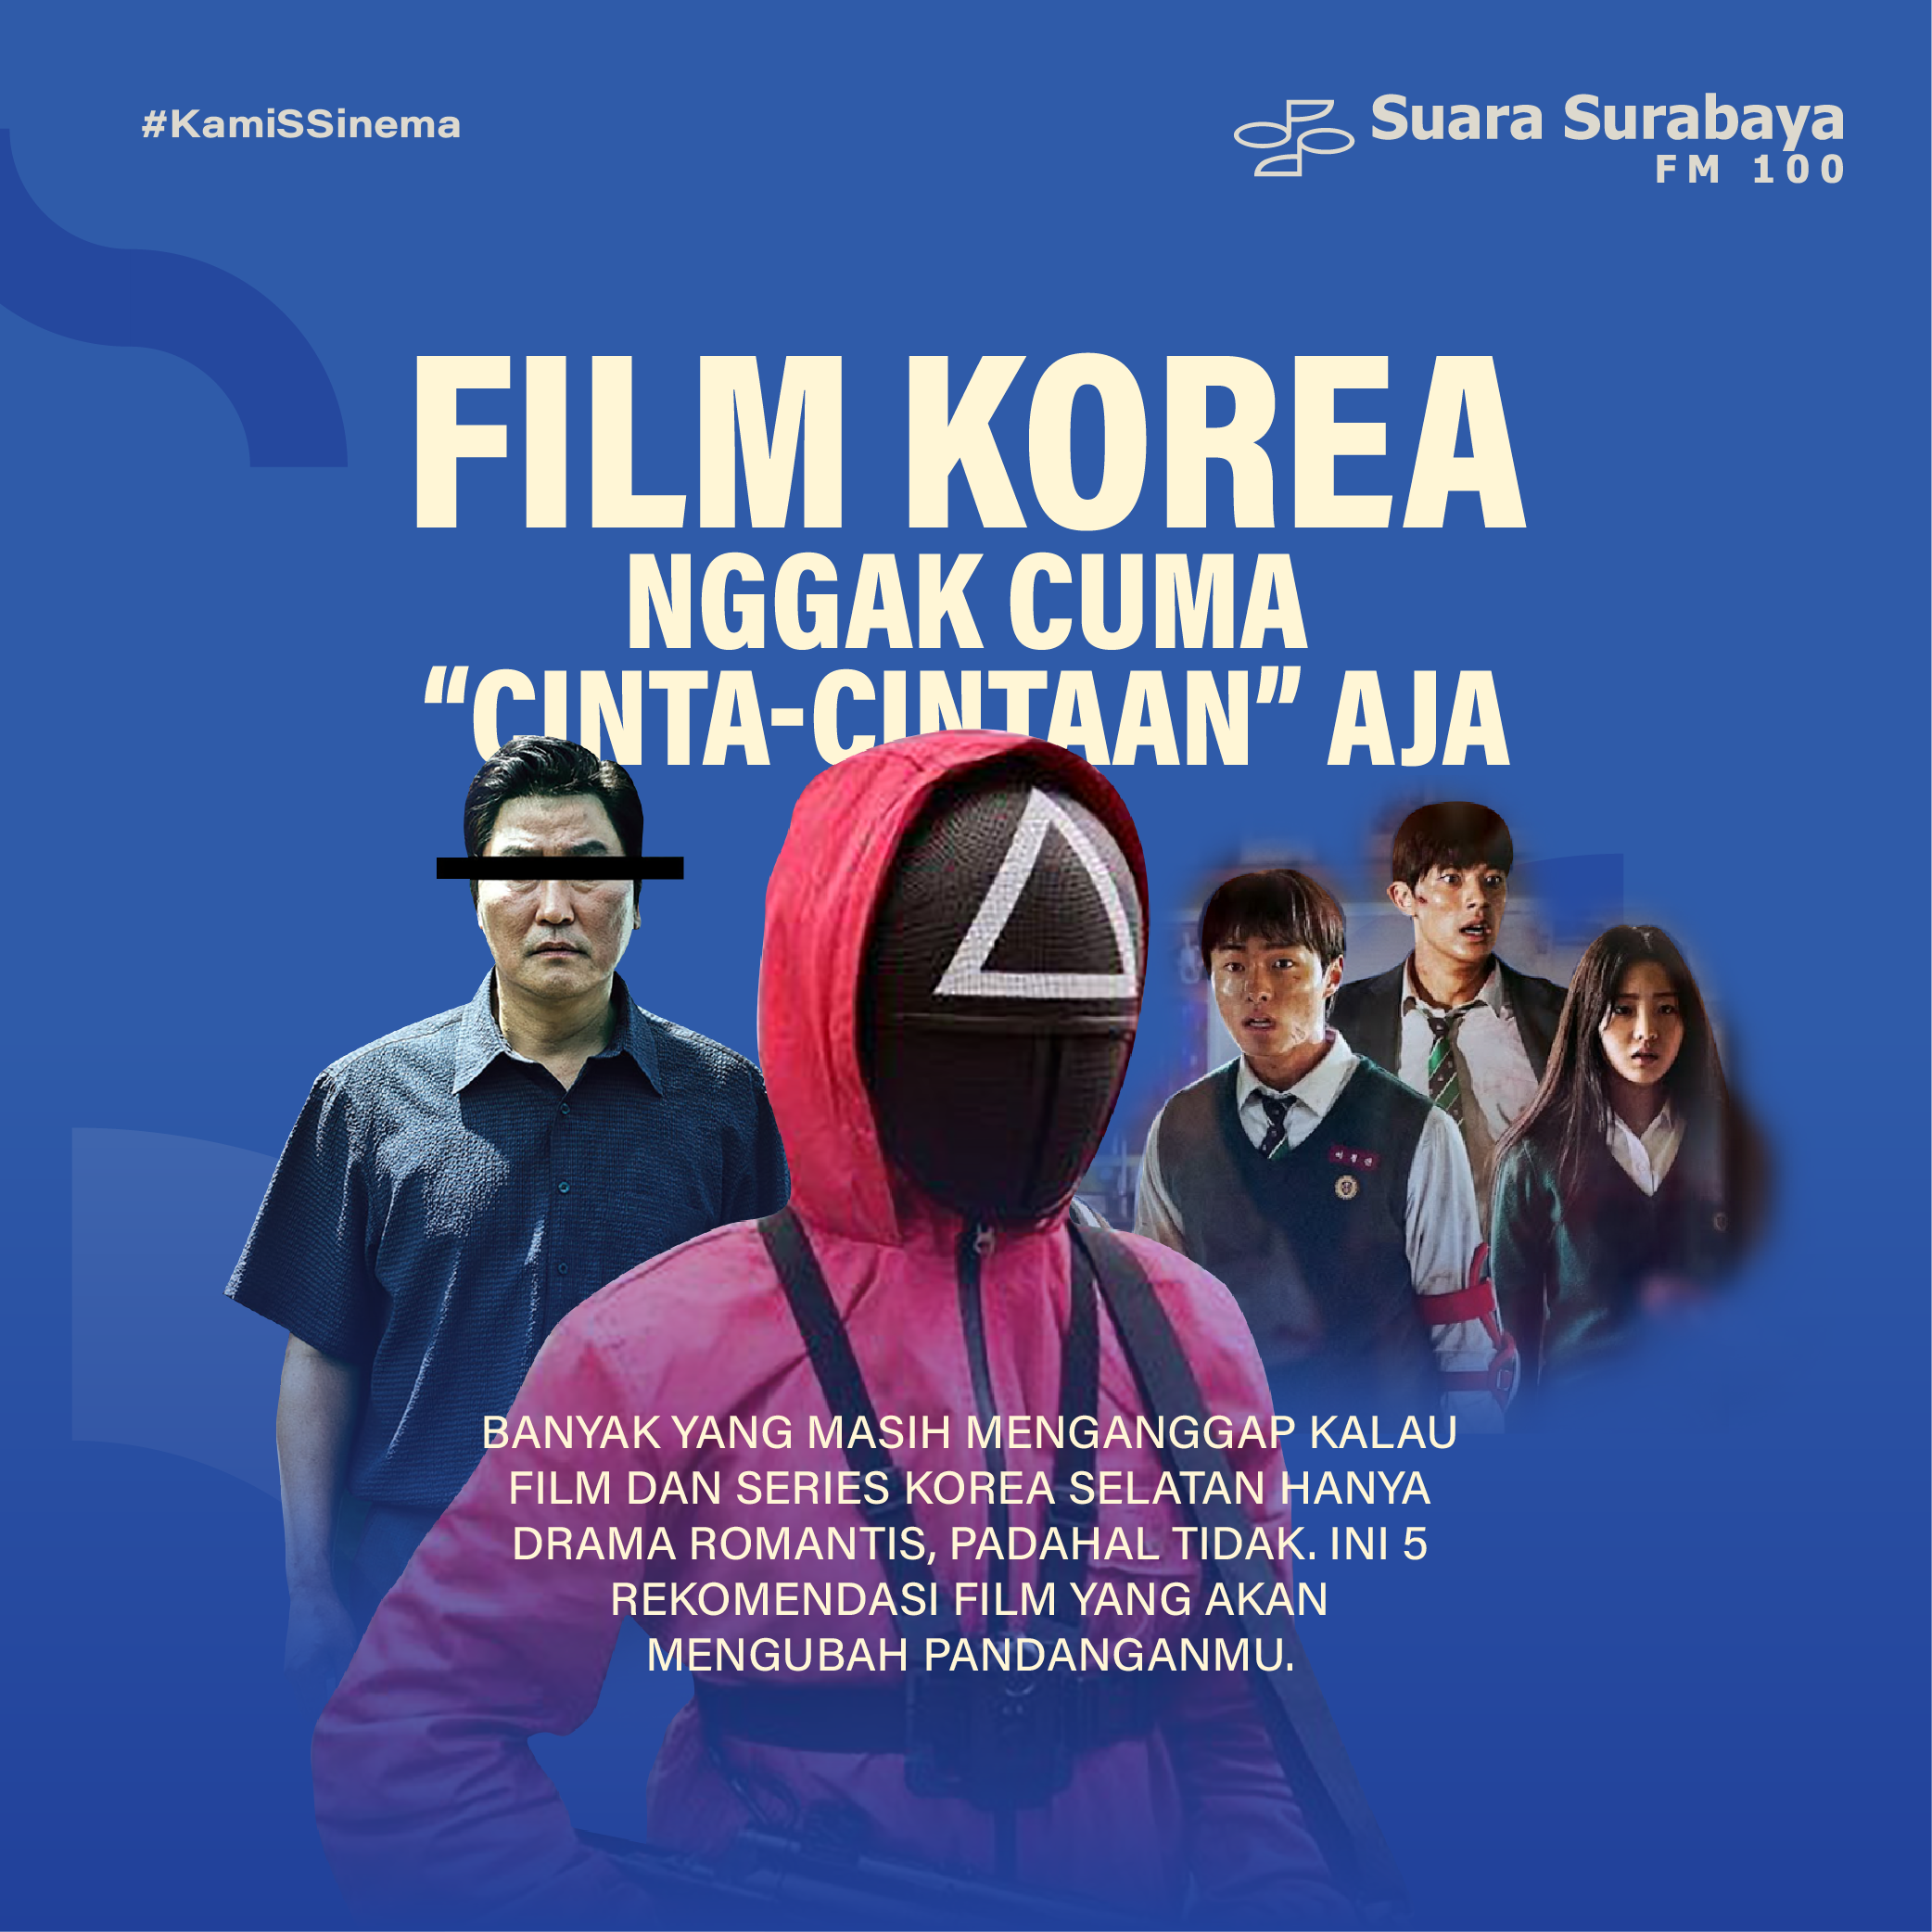 Film Korea Nggak Cuma “Cinta-Cintaan” Aja